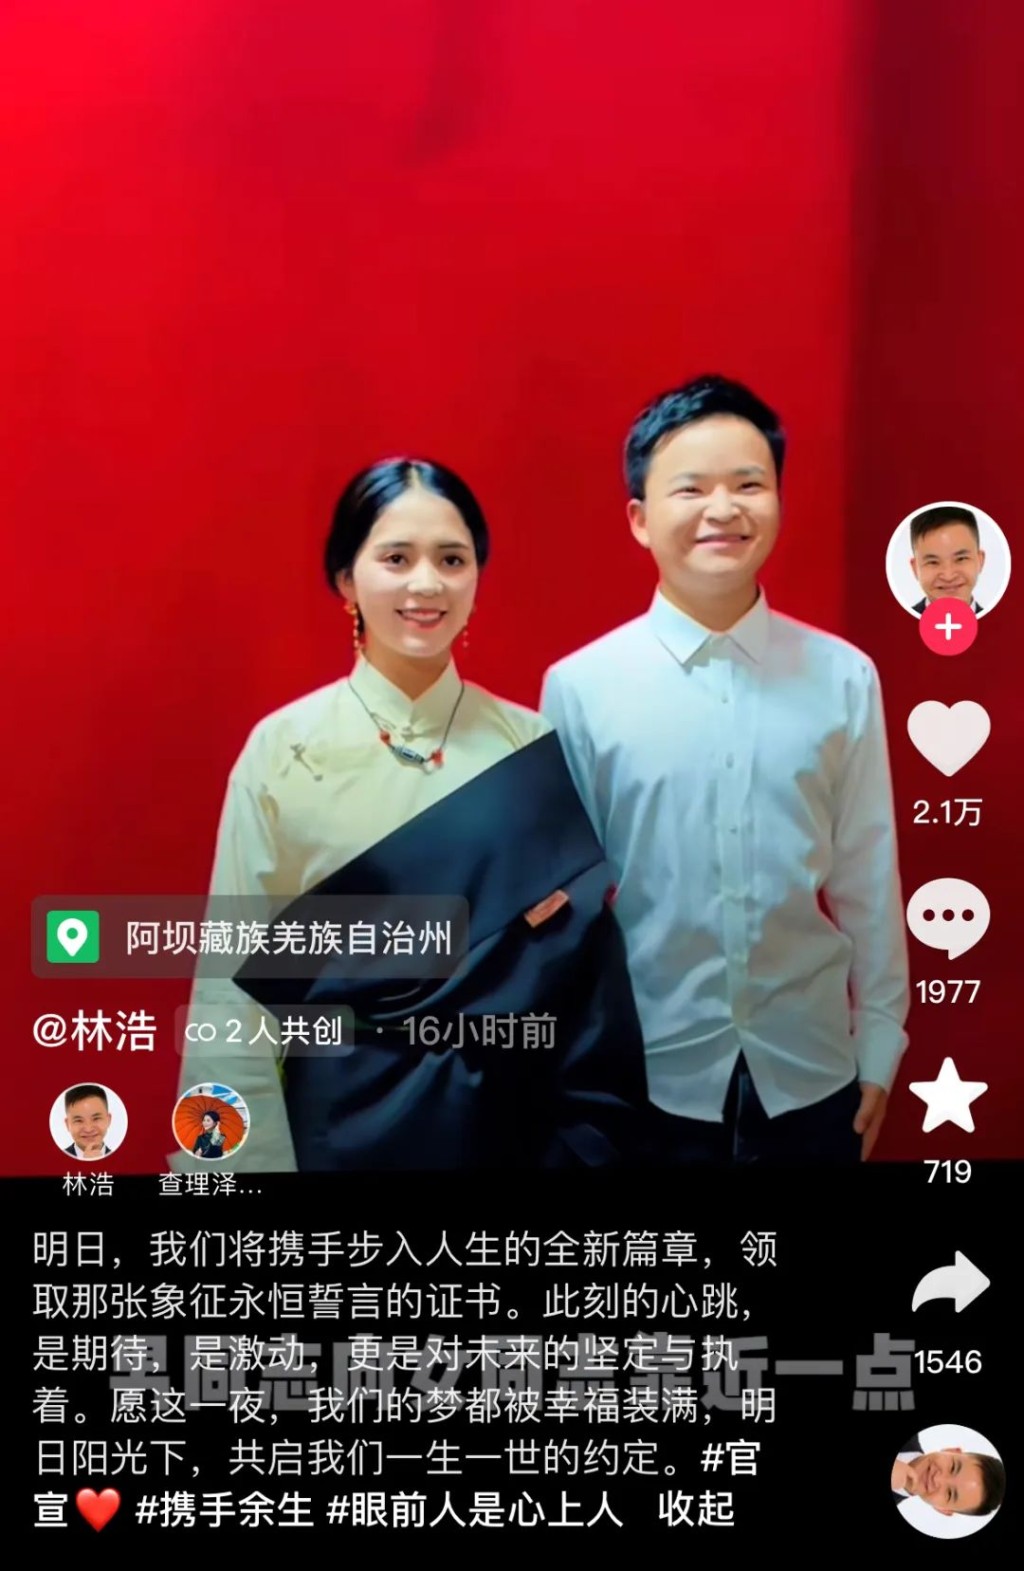 “汶川抗震小英雄”林浩宣布领取结婚证，网友纷纷送上祝福